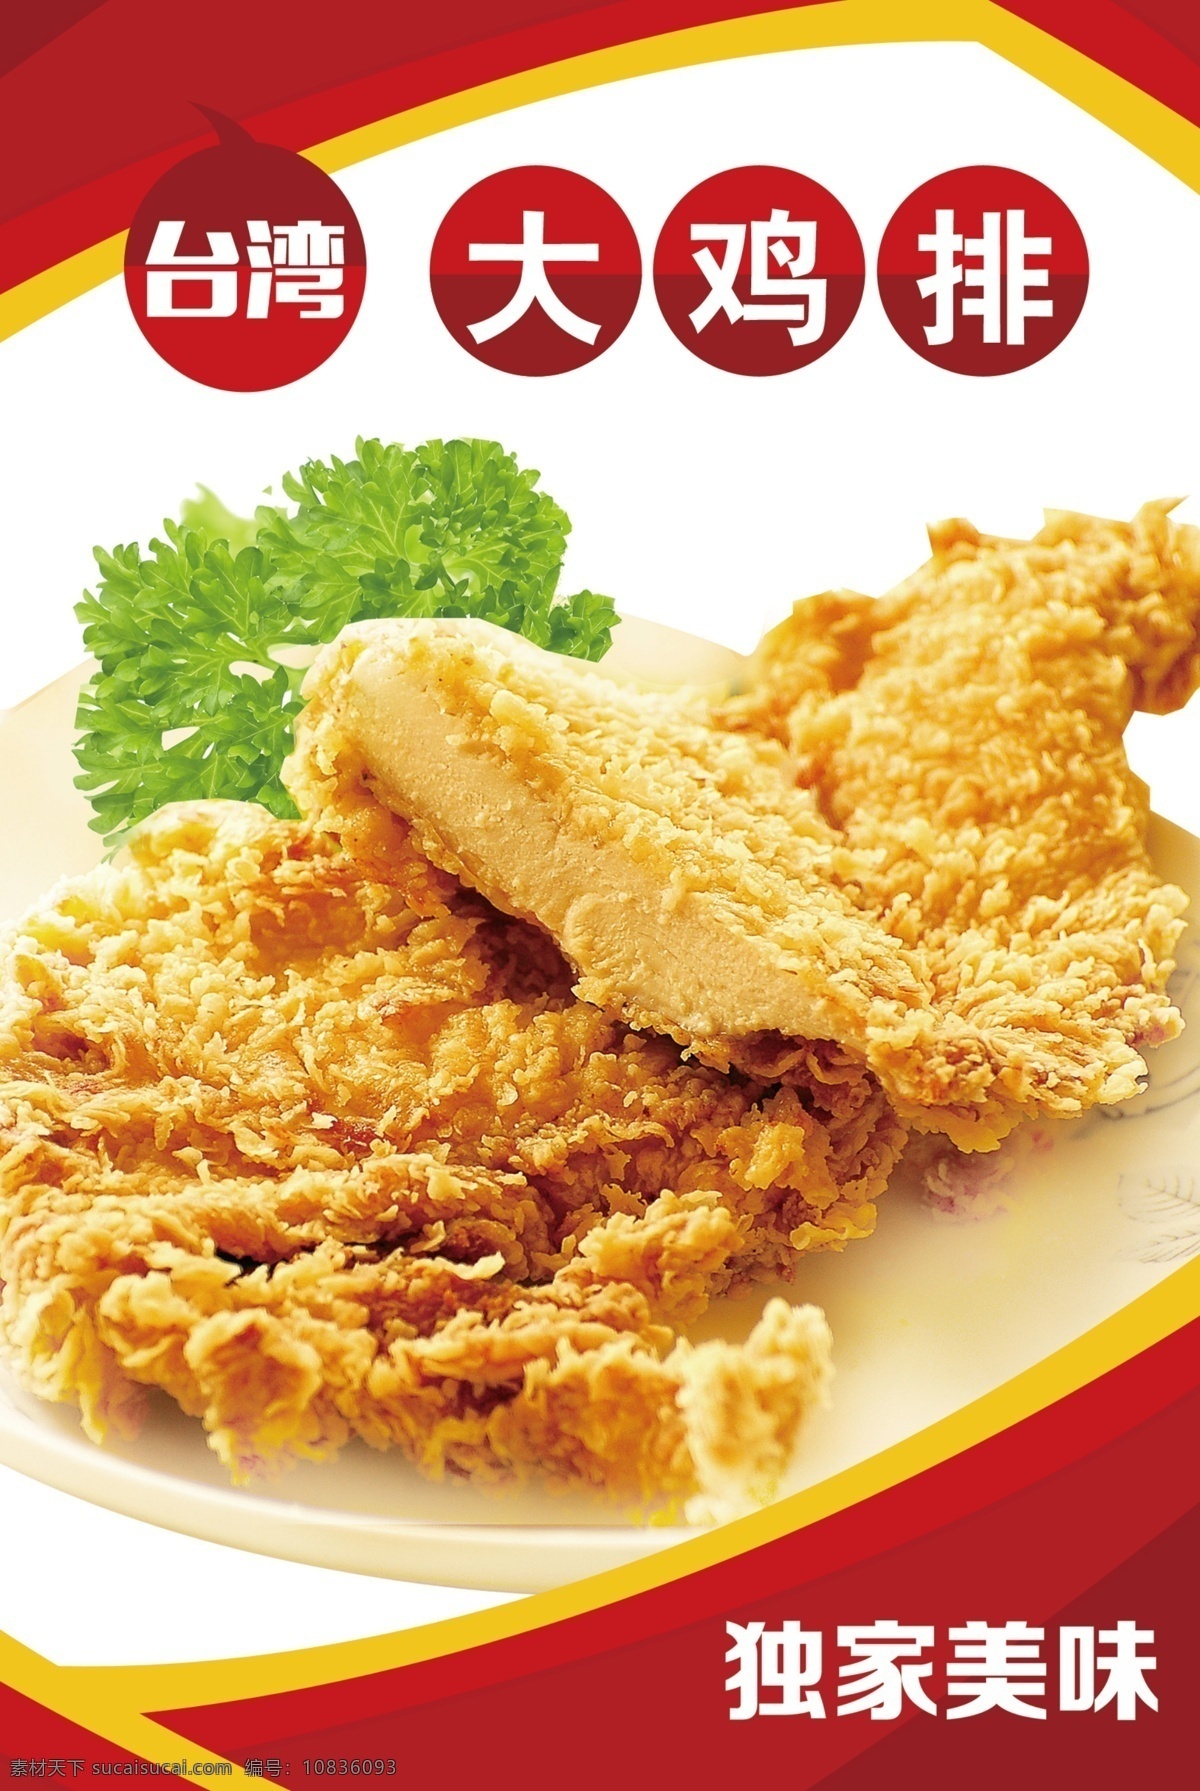 台湾大鸡排 鸡排 麦香鸡腿堡 汉堡包 汉堡 鸡腿 肯德基 麦当劳 德克士 香辣汉堡 薯条 可乐 鸡米花 红色